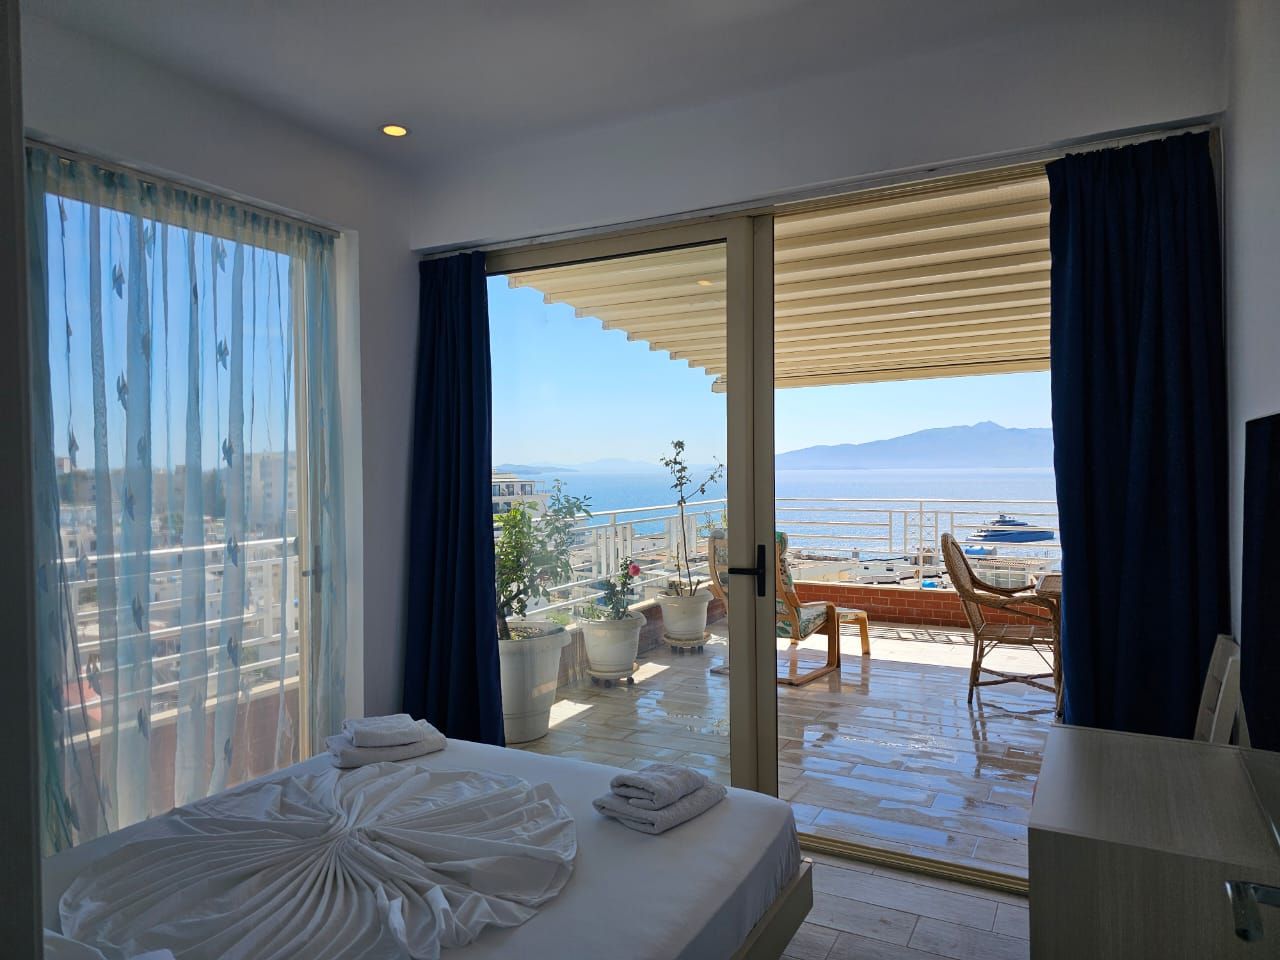 Albania eiendom i Saranda til salgs med to soverom i en moderne bolig med flott panoramautsikt over havet